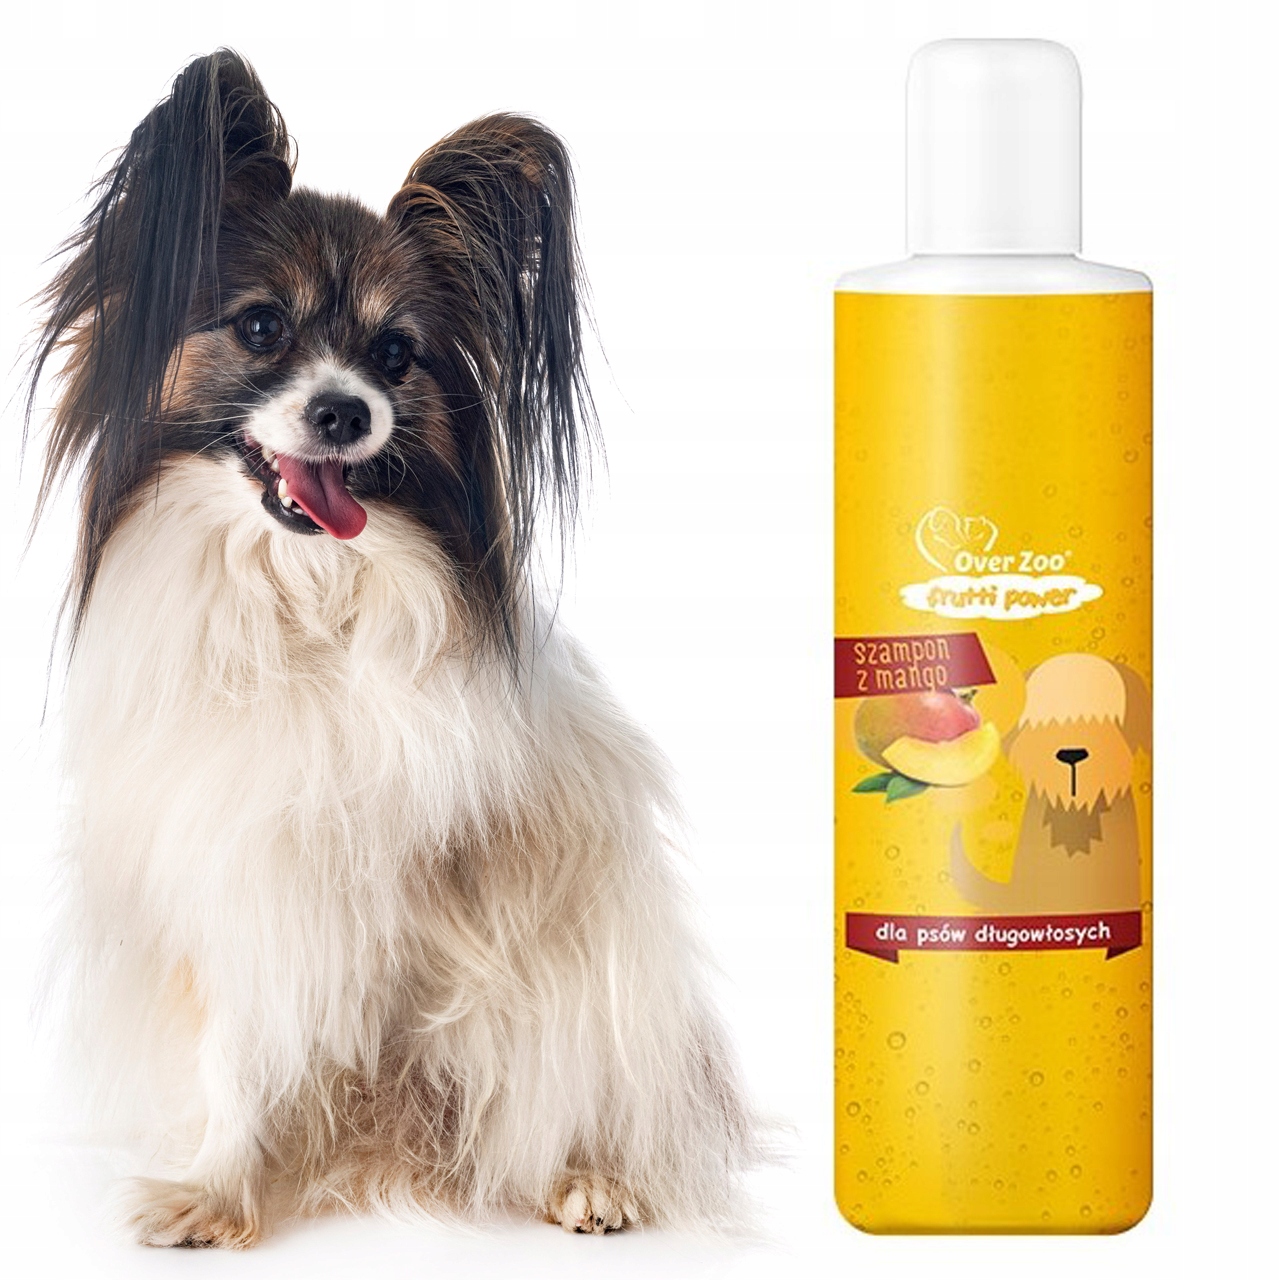 profesjonalny szampon dla psów długowłosych